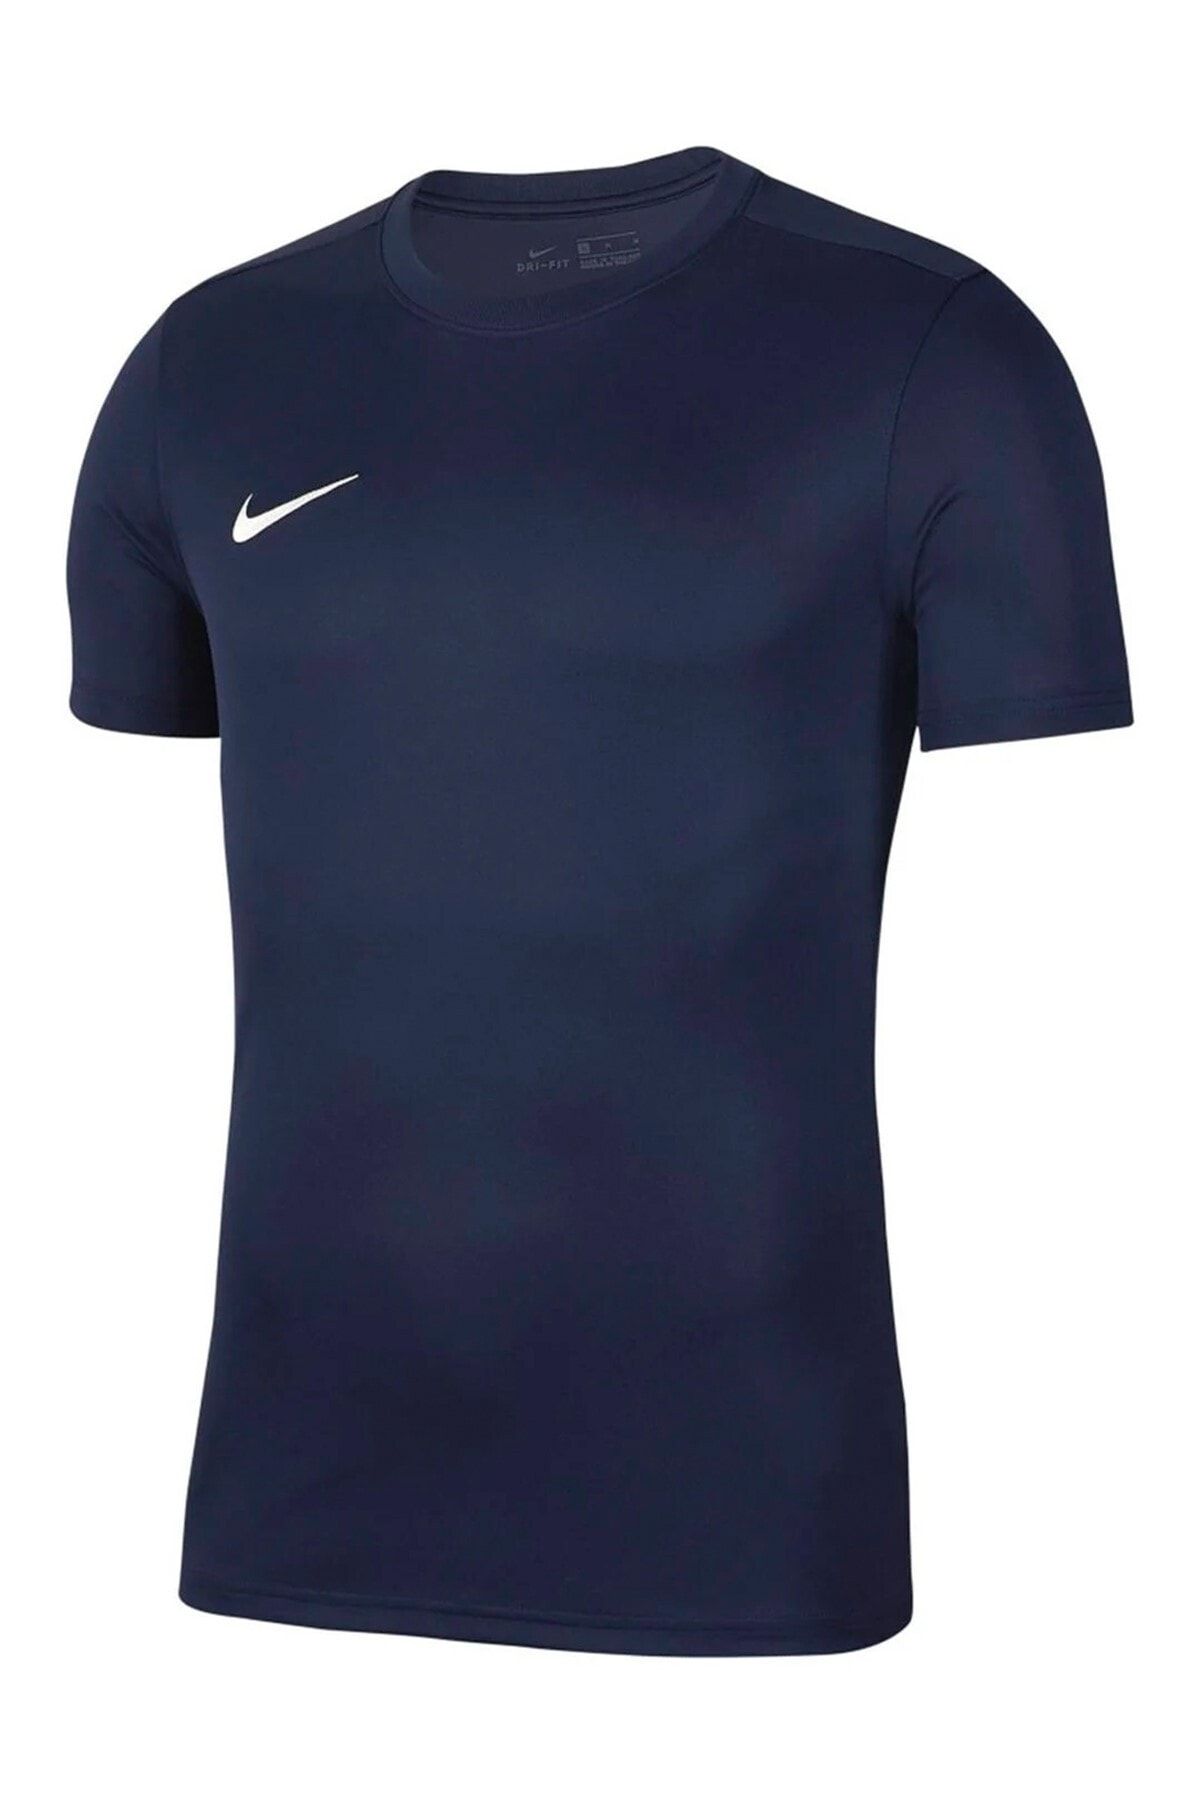 Nike Erkek  T-Shirt   Bv6708-410